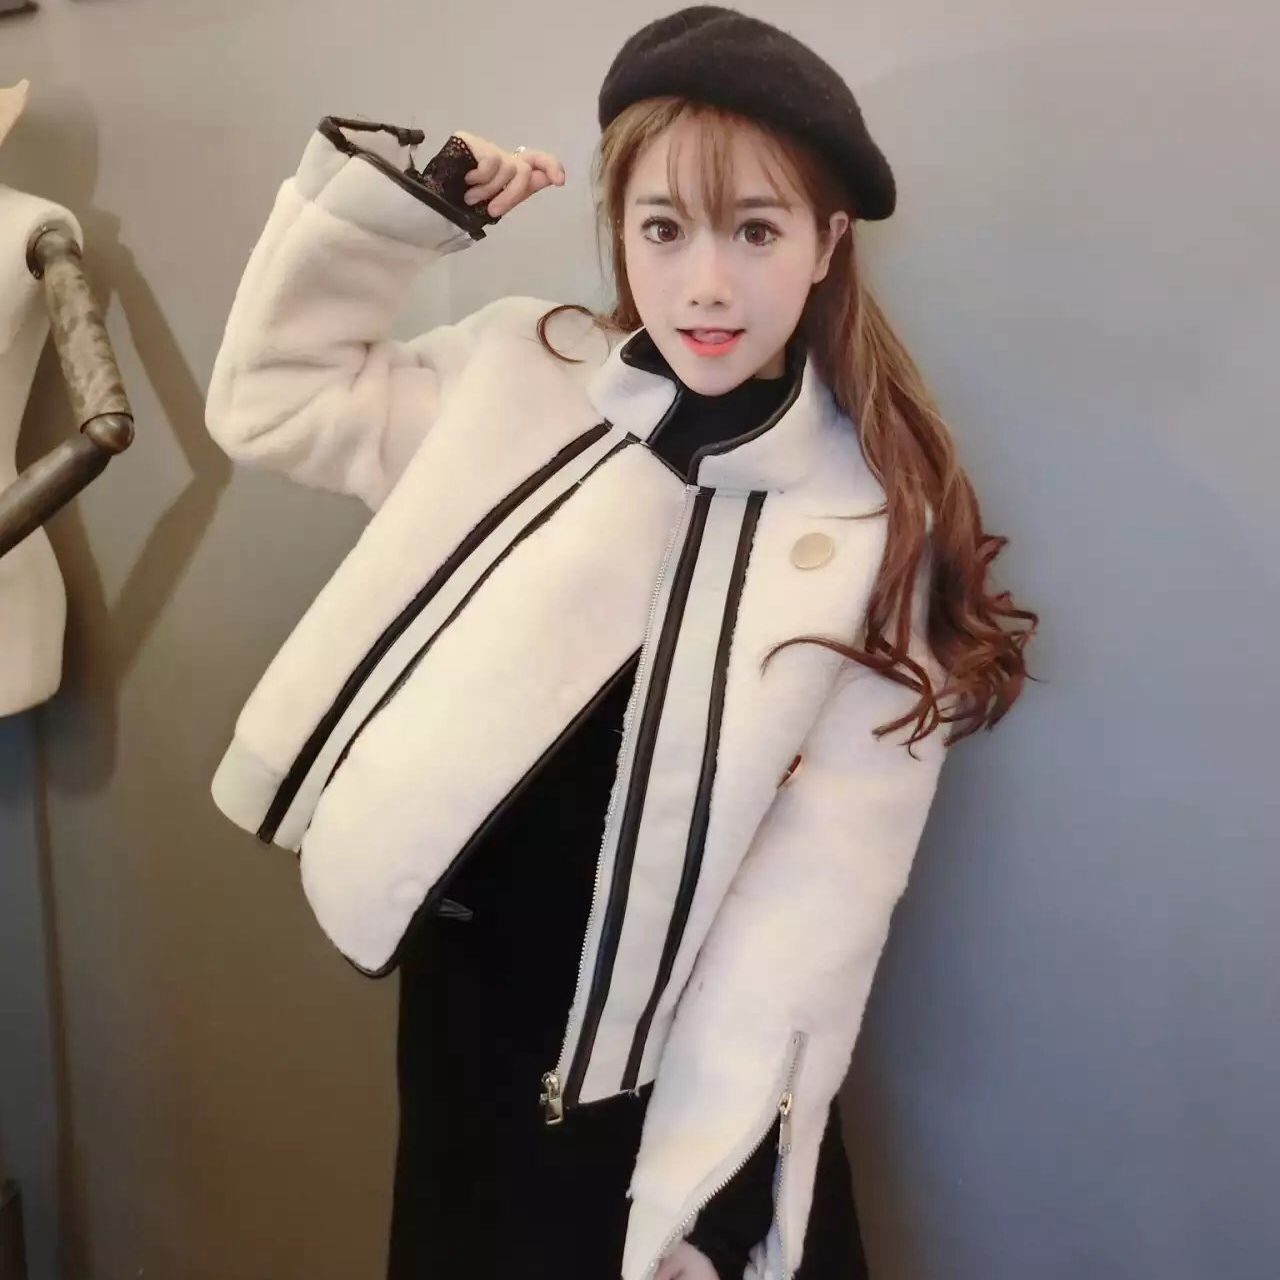 新款韓版時尚PU皮拼接毛絨短外套女冬裝新款潮長袖上衣服夾克